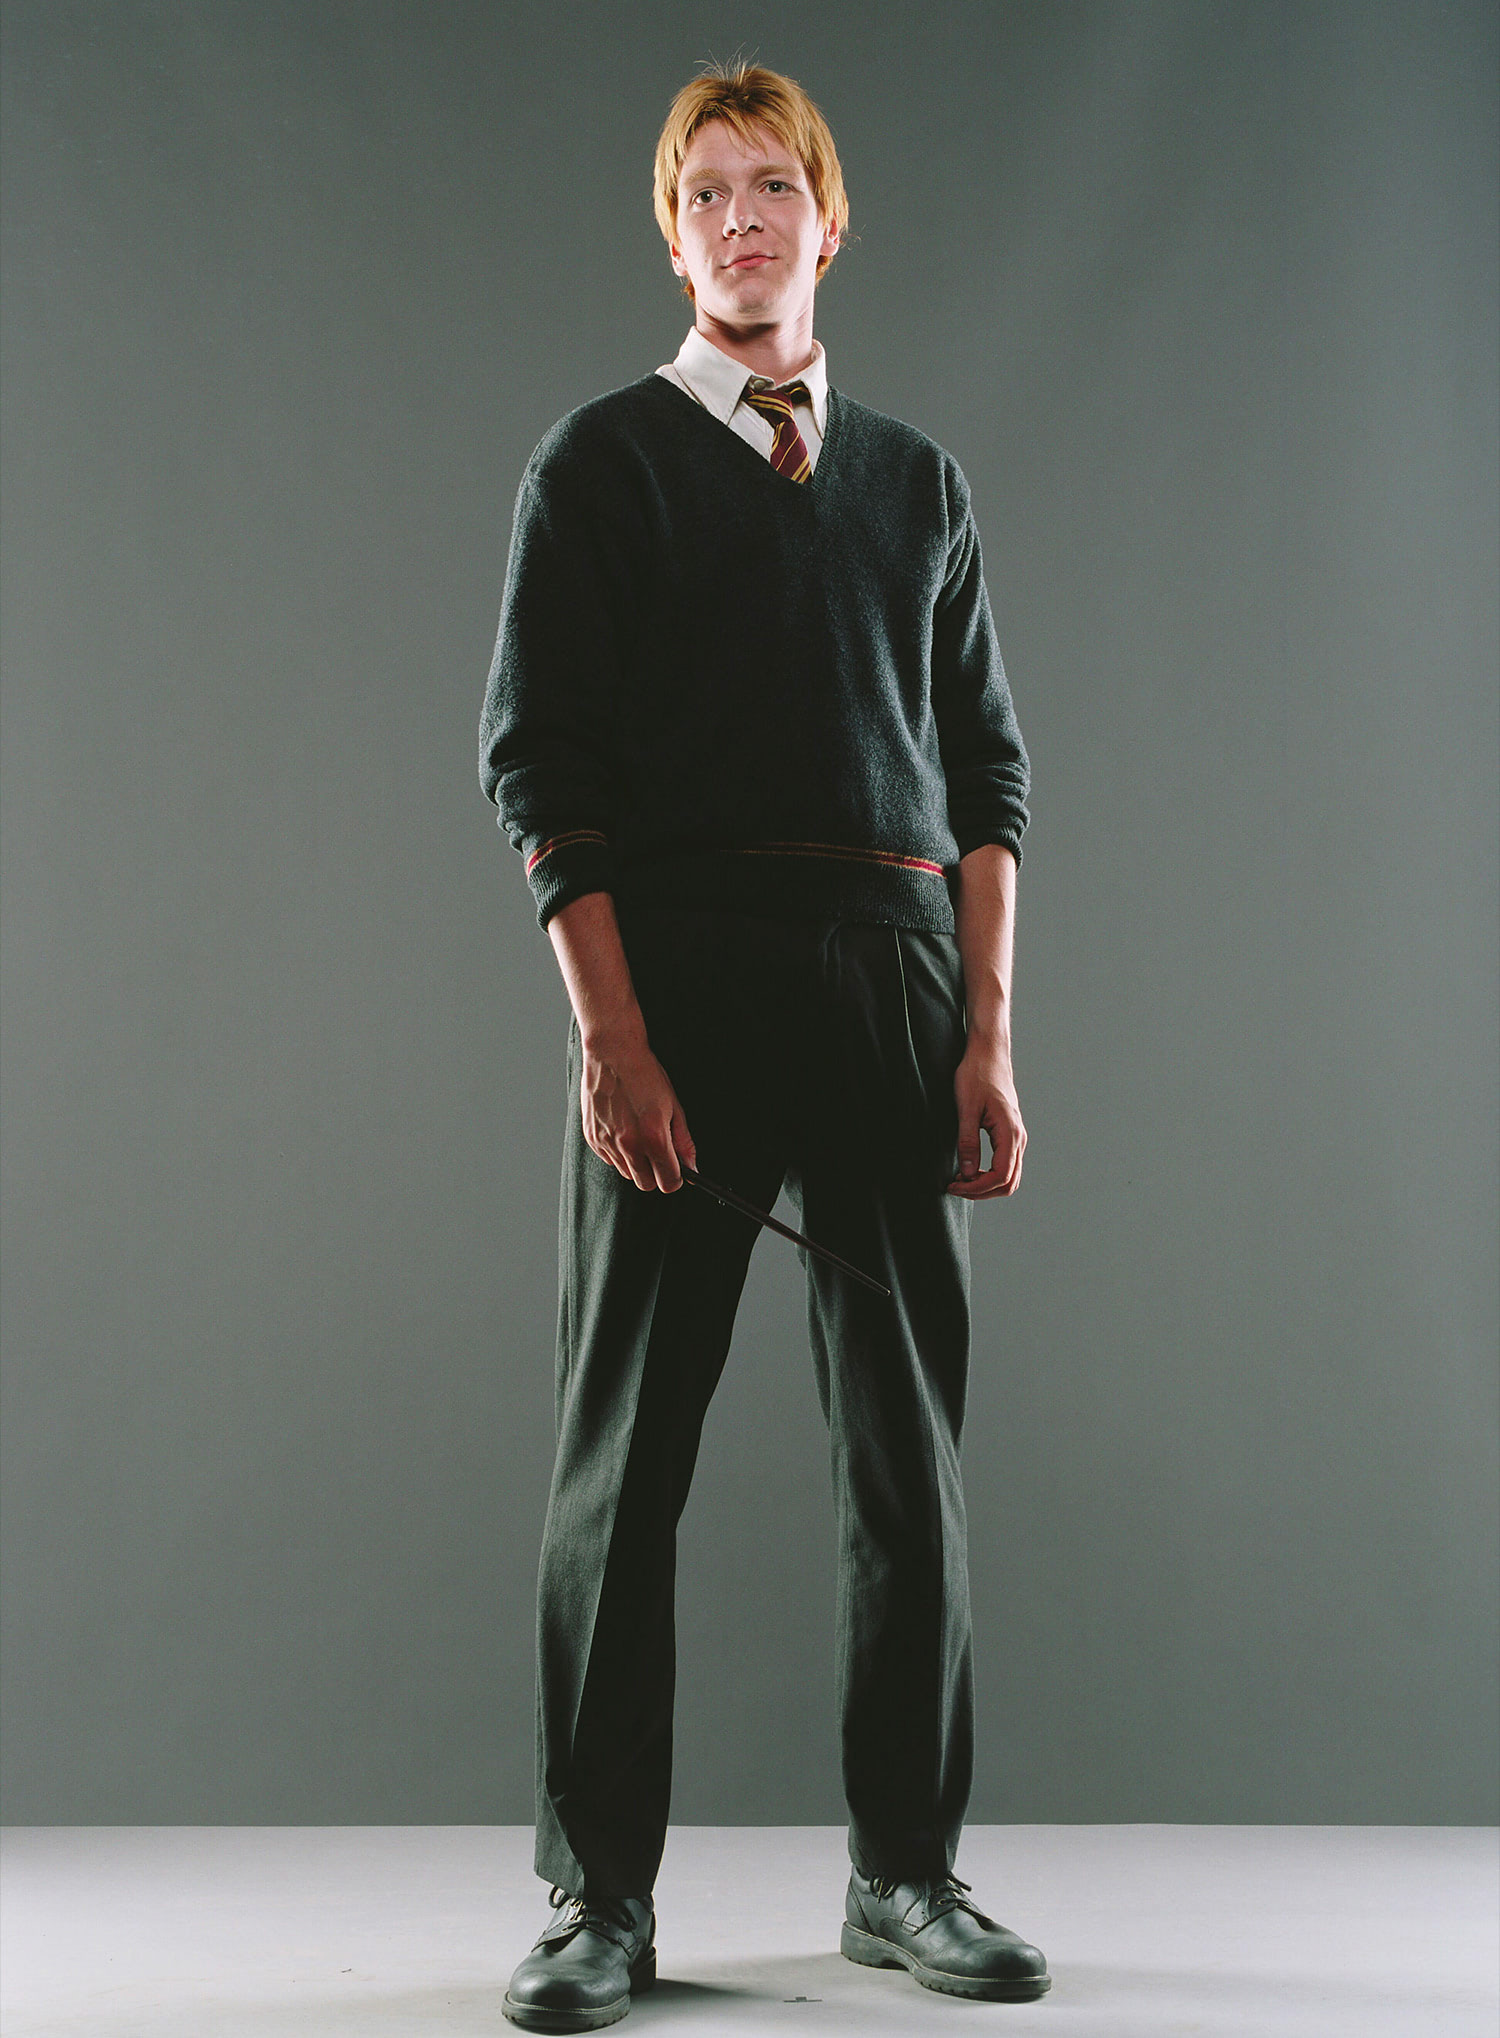 Portrait of George Weasley